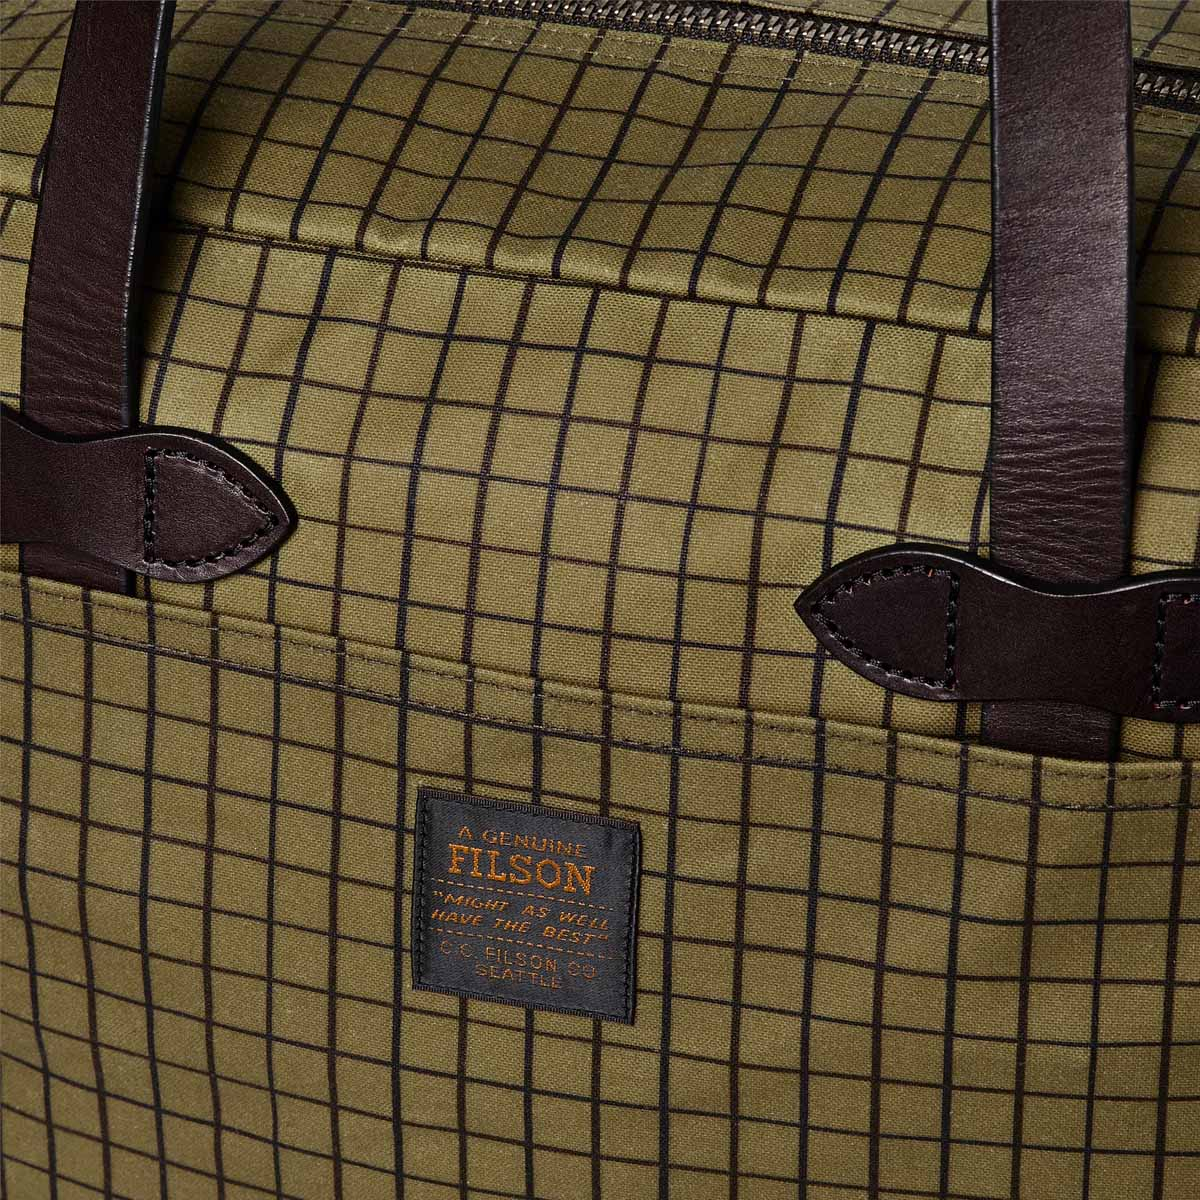 Filson Tin Cloth Tote Bag with Zipper Flyway Green, für Männer und Frauen mit Stil und Liebe zur Qualität